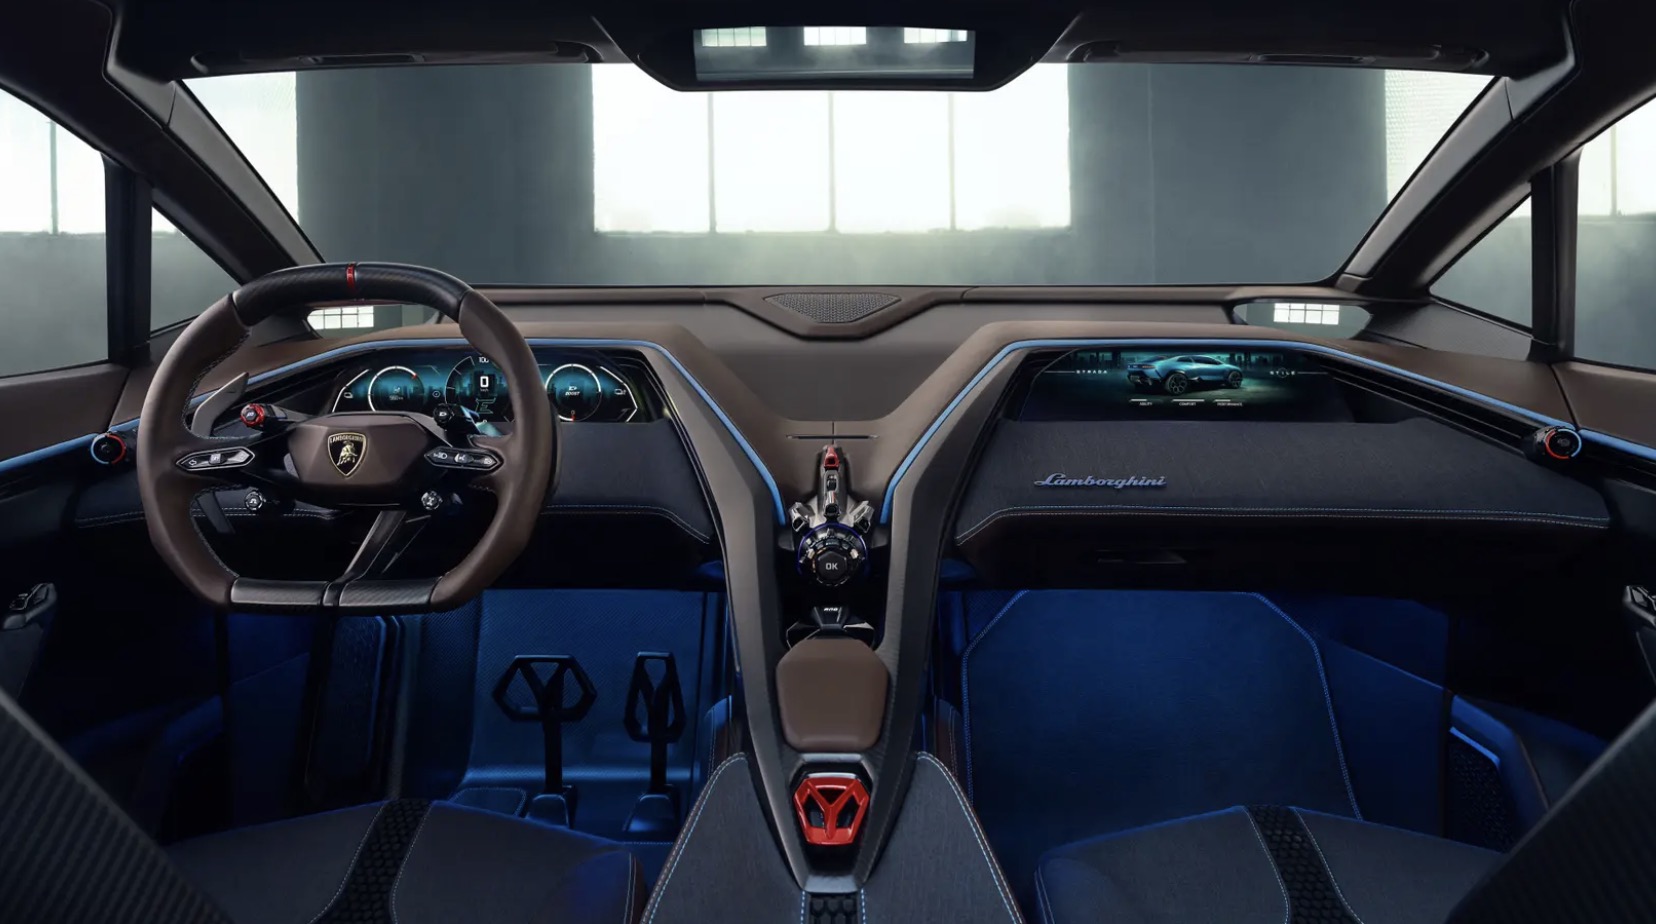 Bảng điều khiển trung tâm hình chữ Y của Lamborghini Lanzador. Ảnh: Lamborghini